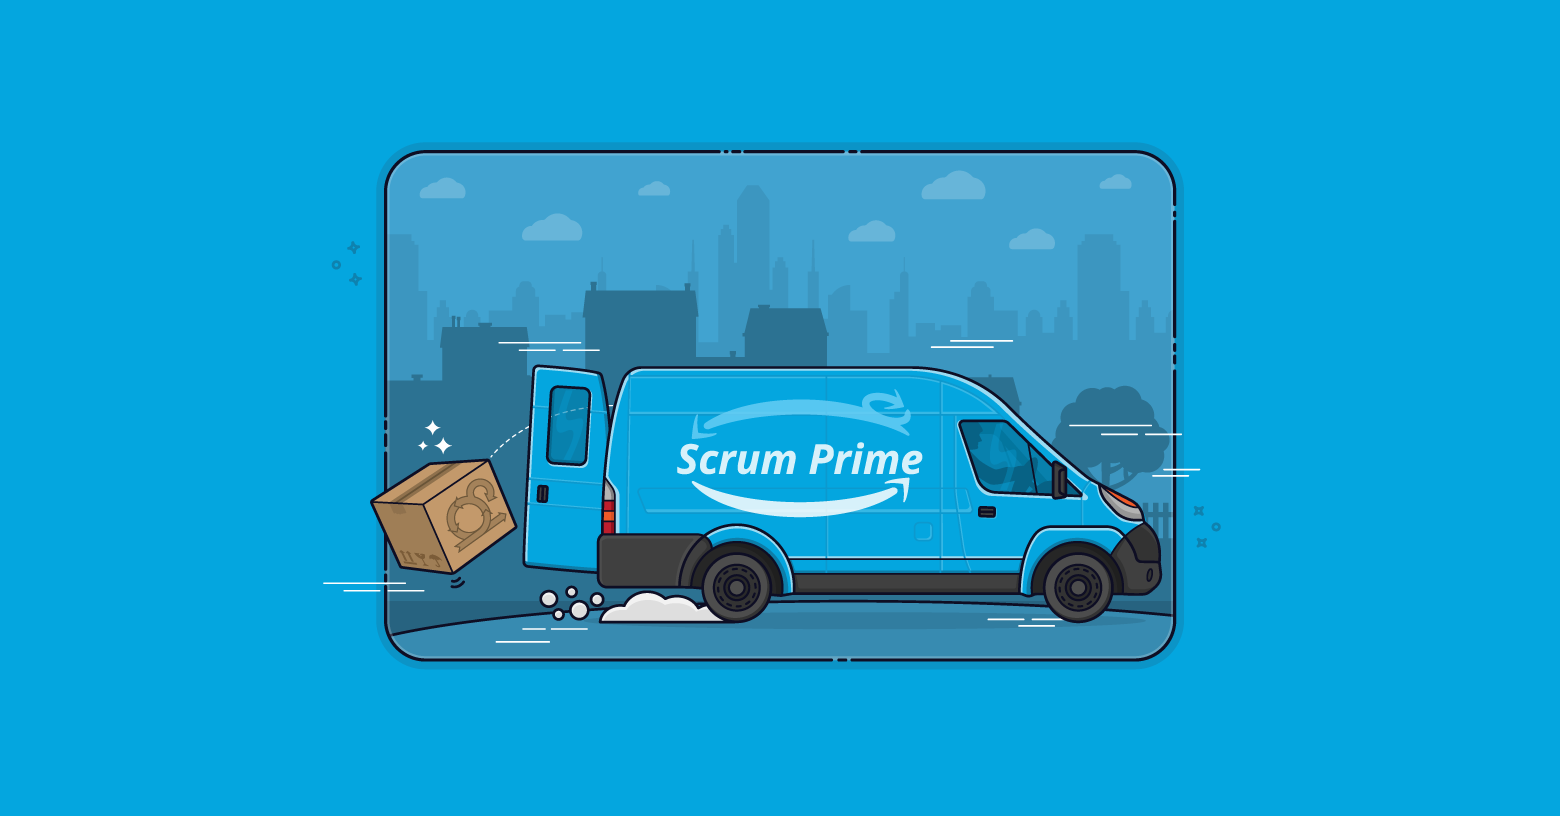 Announcing Scrum Prime